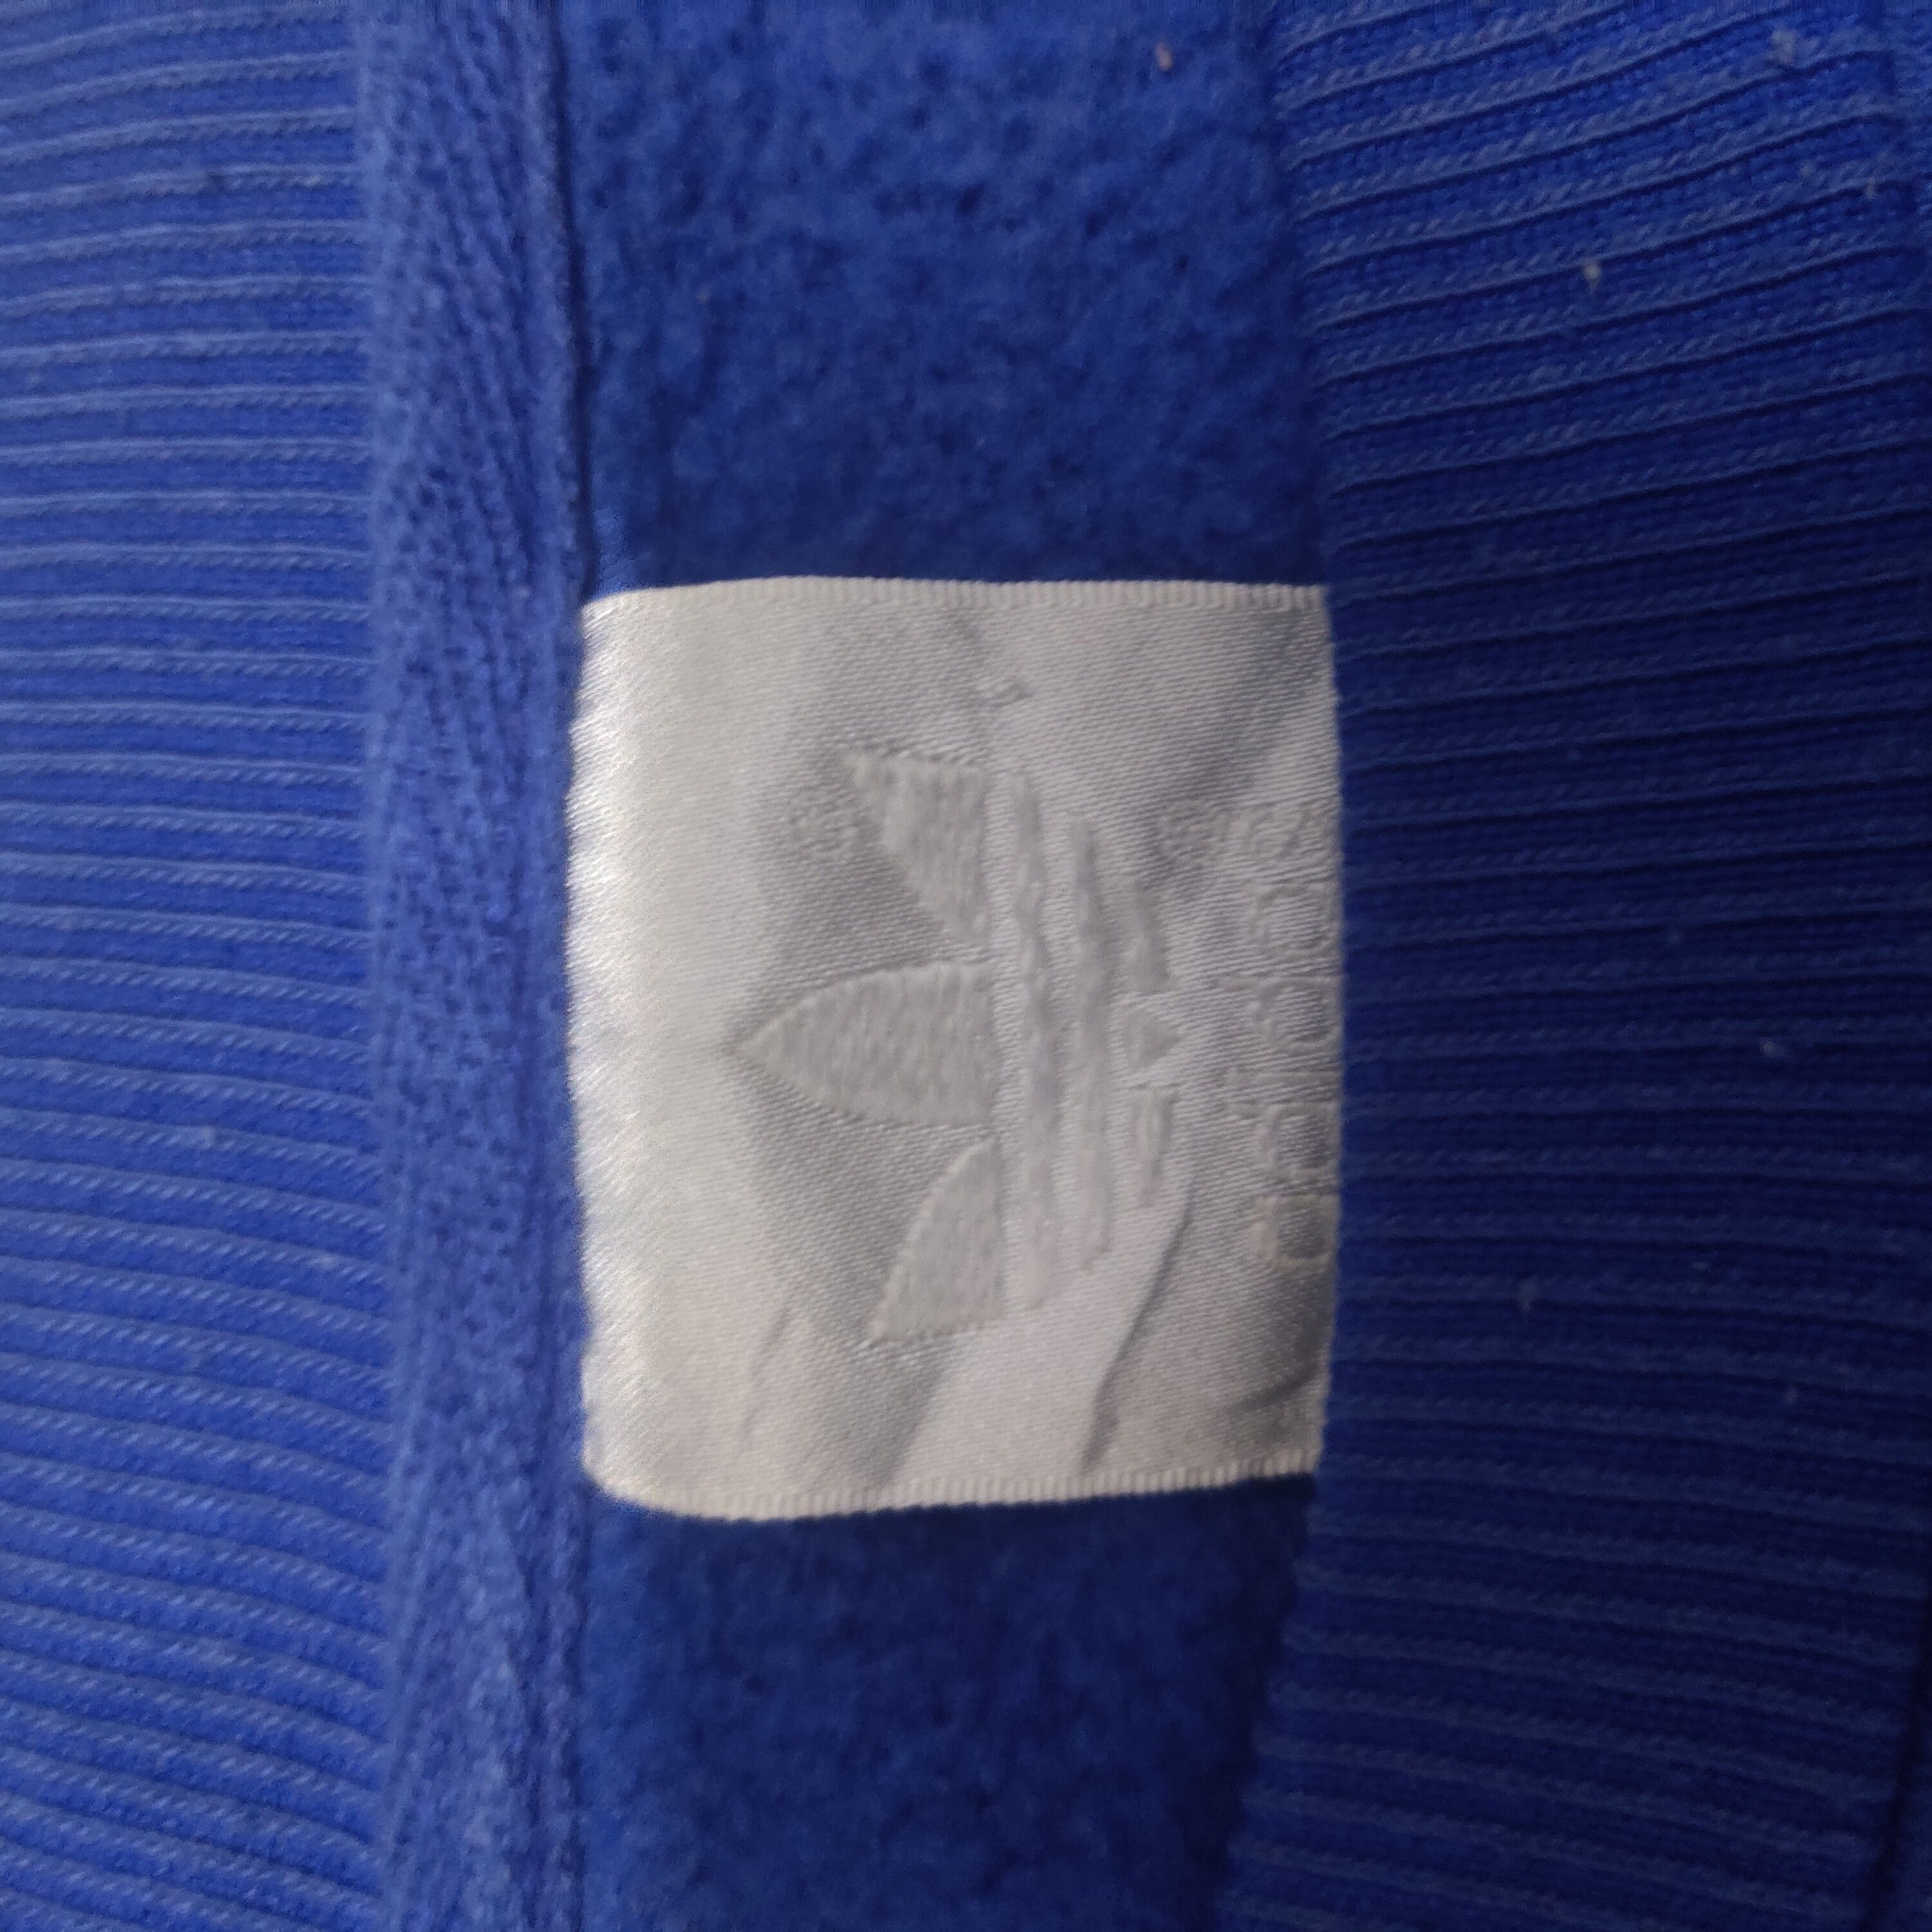 Vintage Adidas Sweatshirt Trefoil Embroidery Short Sleeve - 4